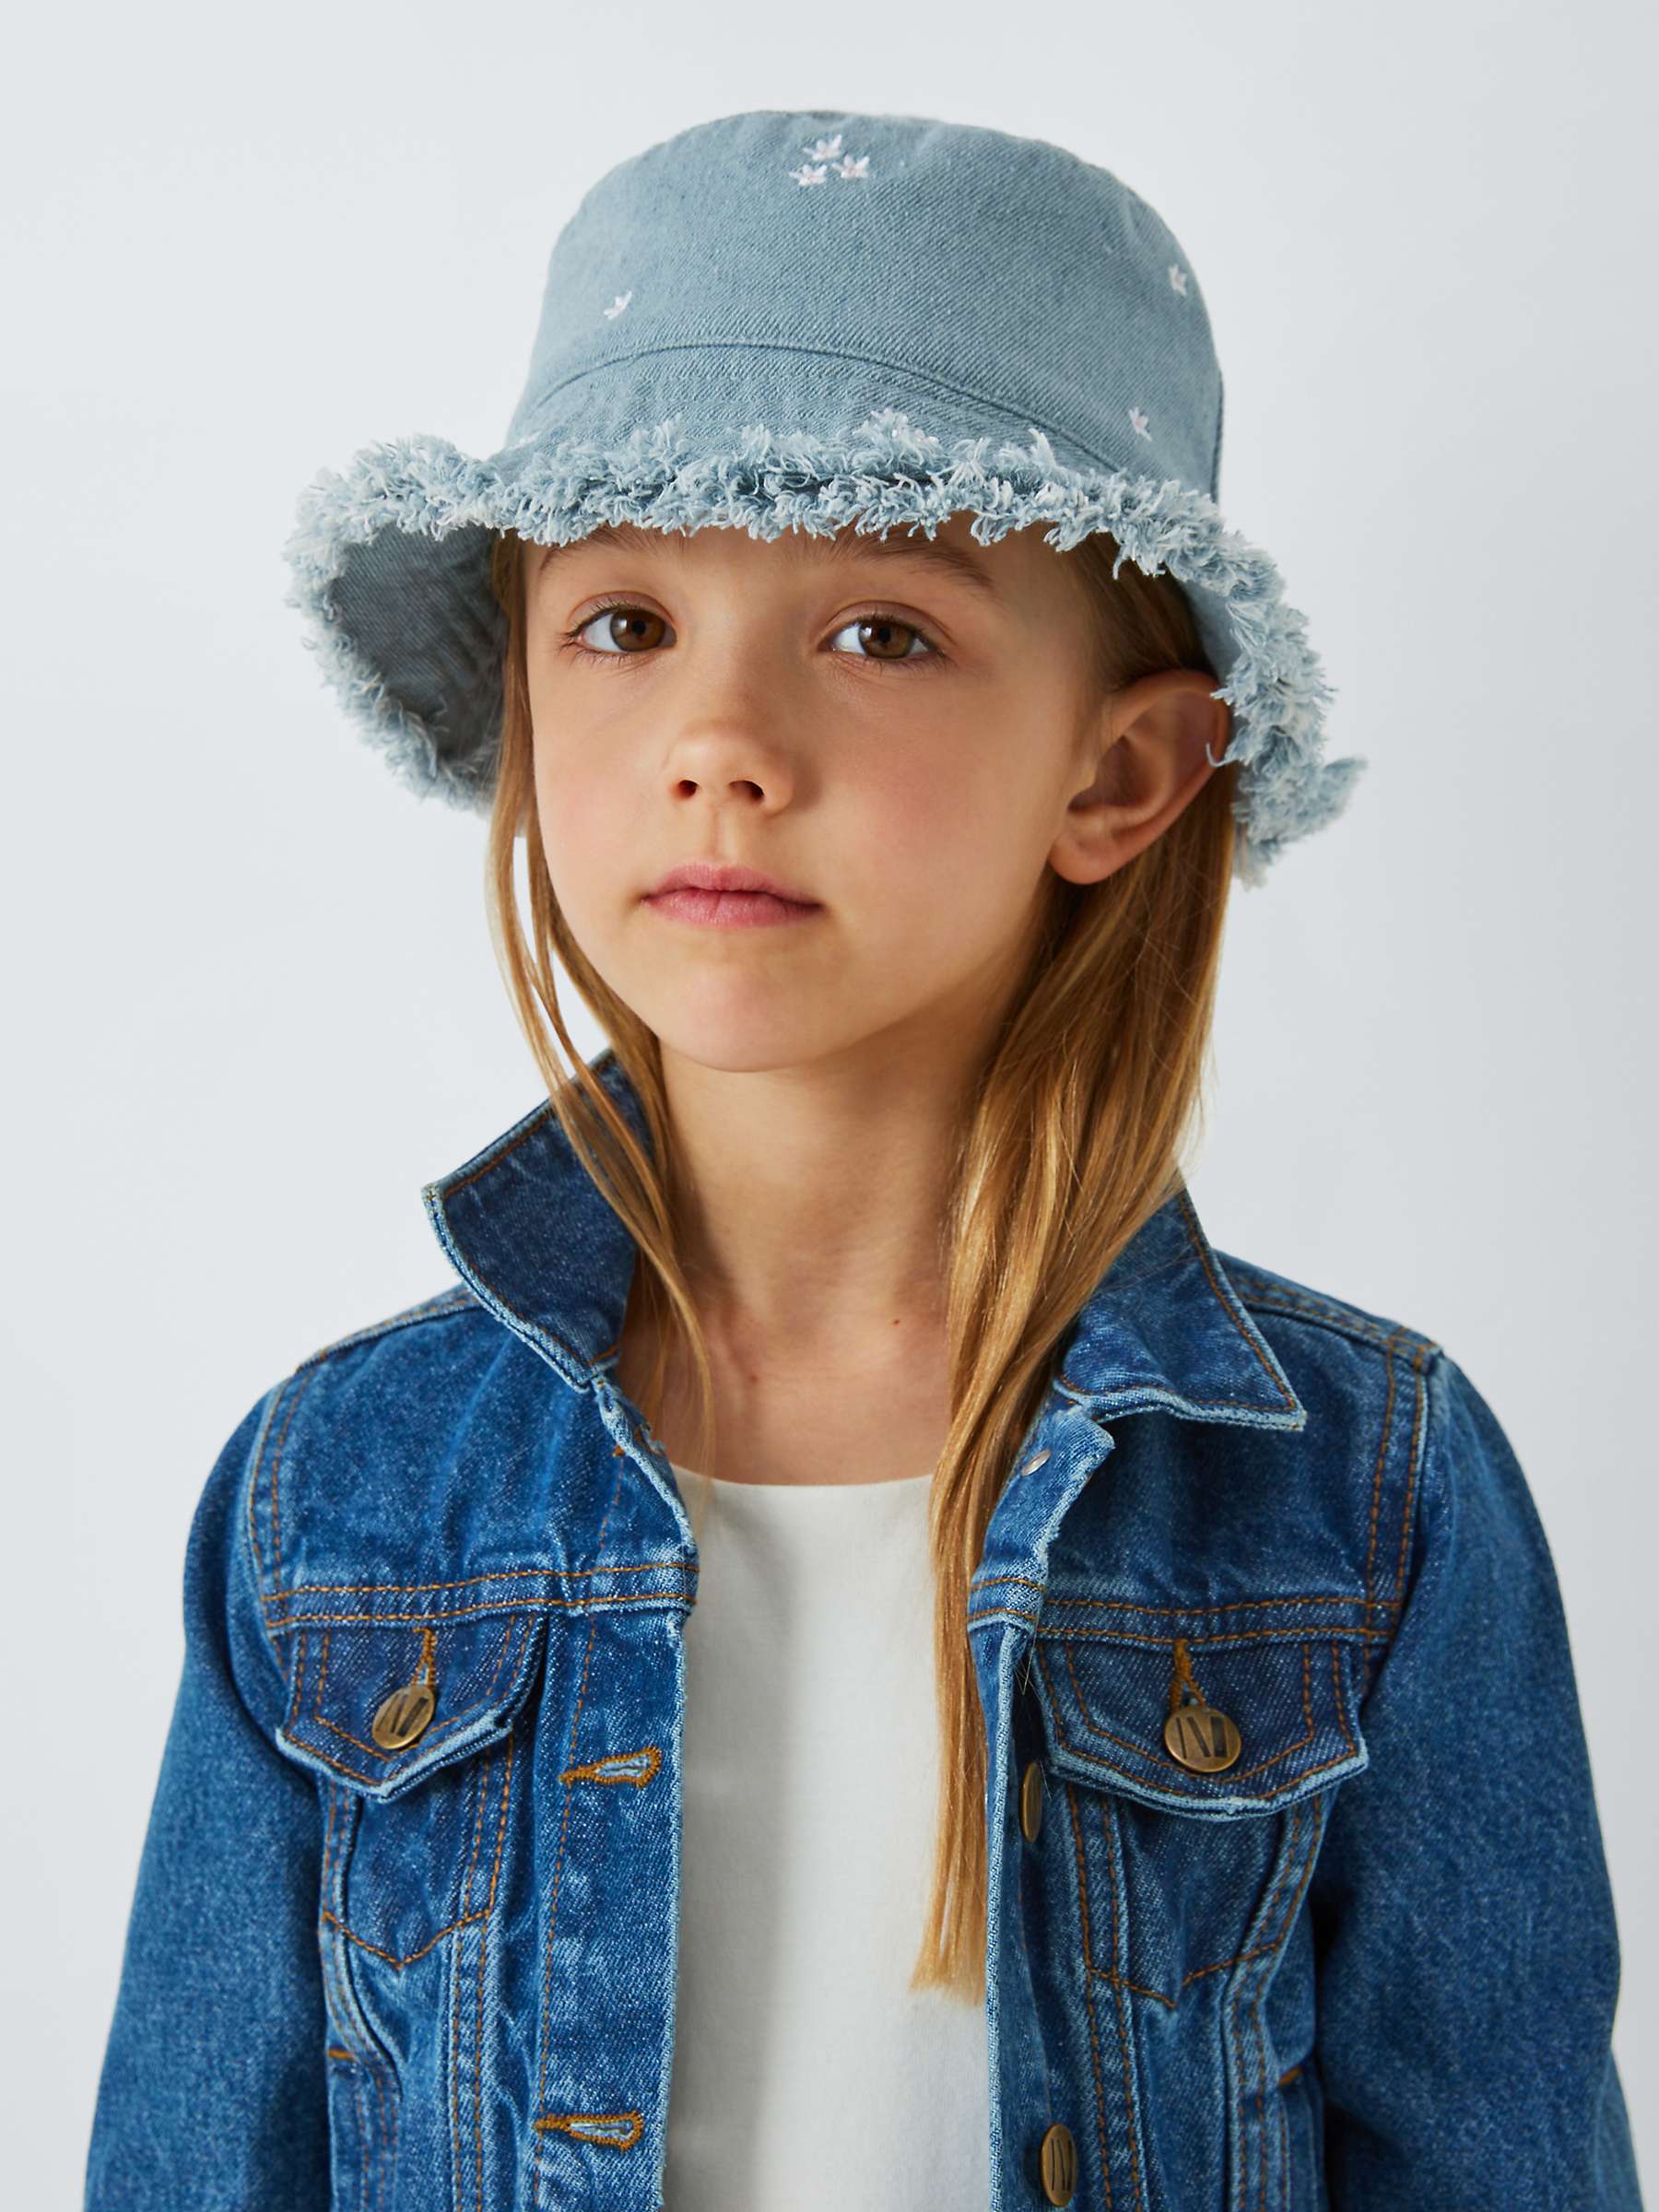 Buy John Lewis Kids' Denim Floral Embroidered Bucket Hat, Blue Mid Online at johnlewis.com